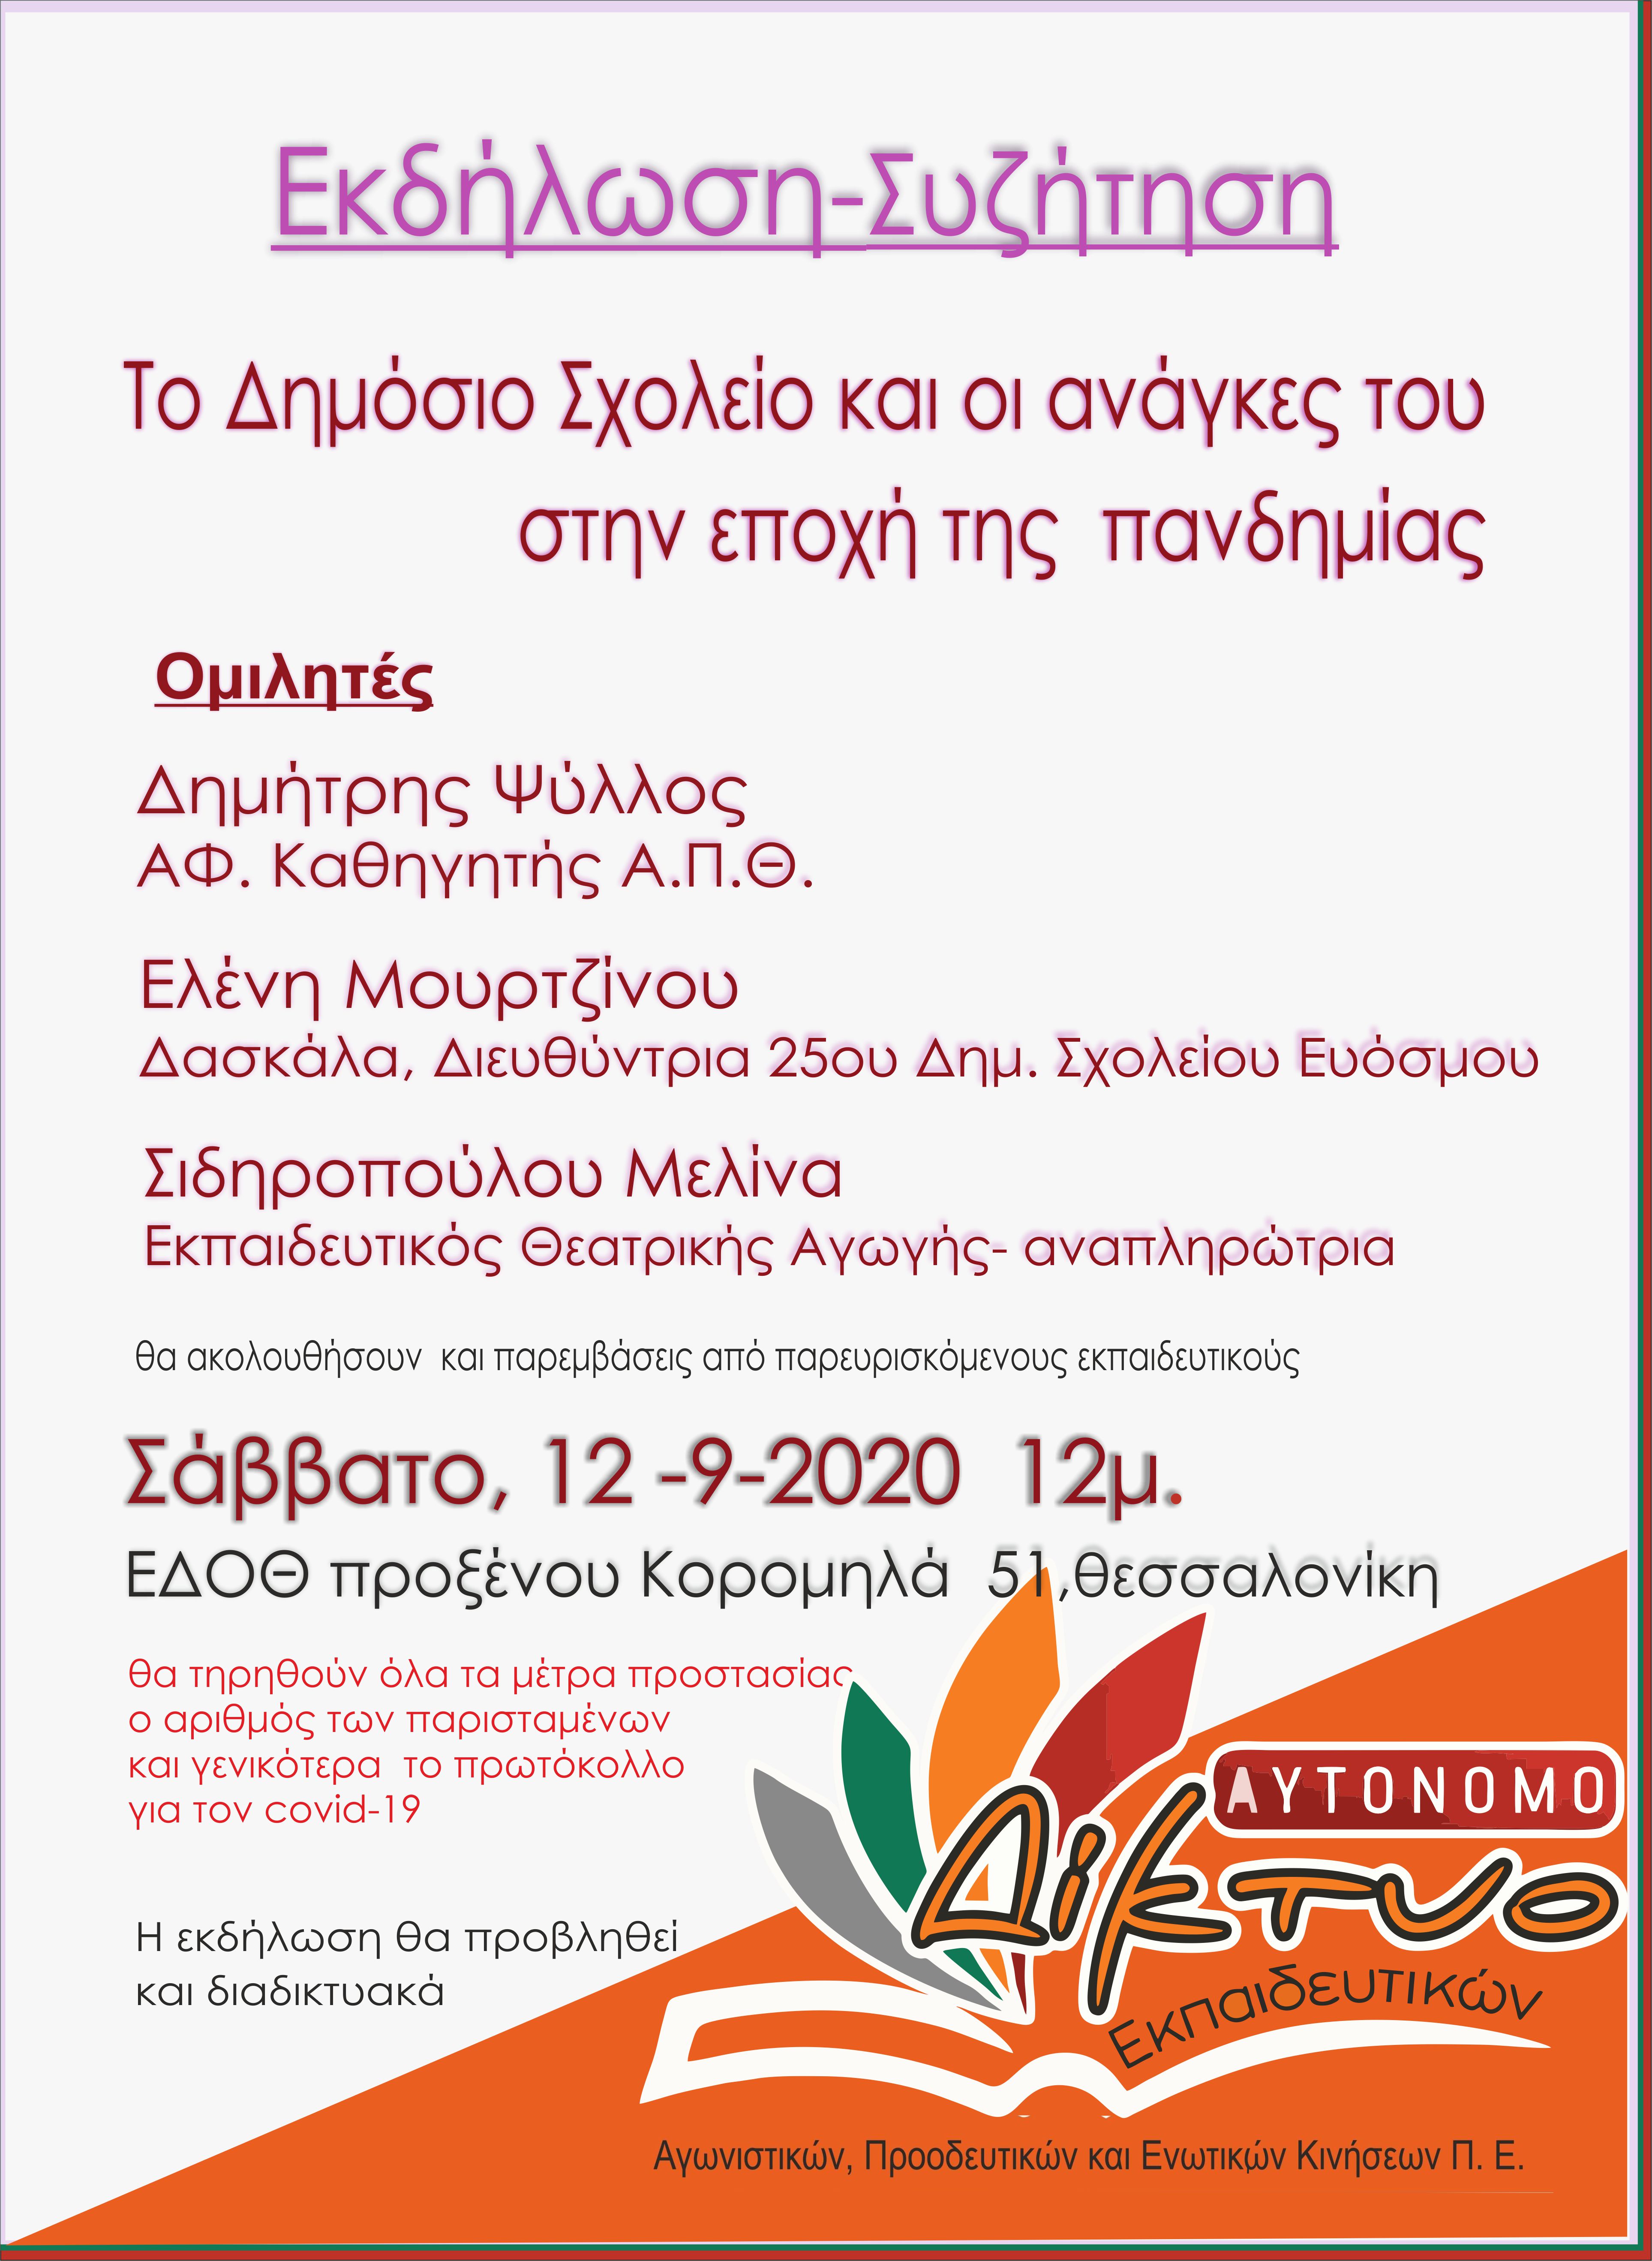 ekdilosi_aytonomo_diktyo_edoth-thessaloniki-12-9-2020.jpg